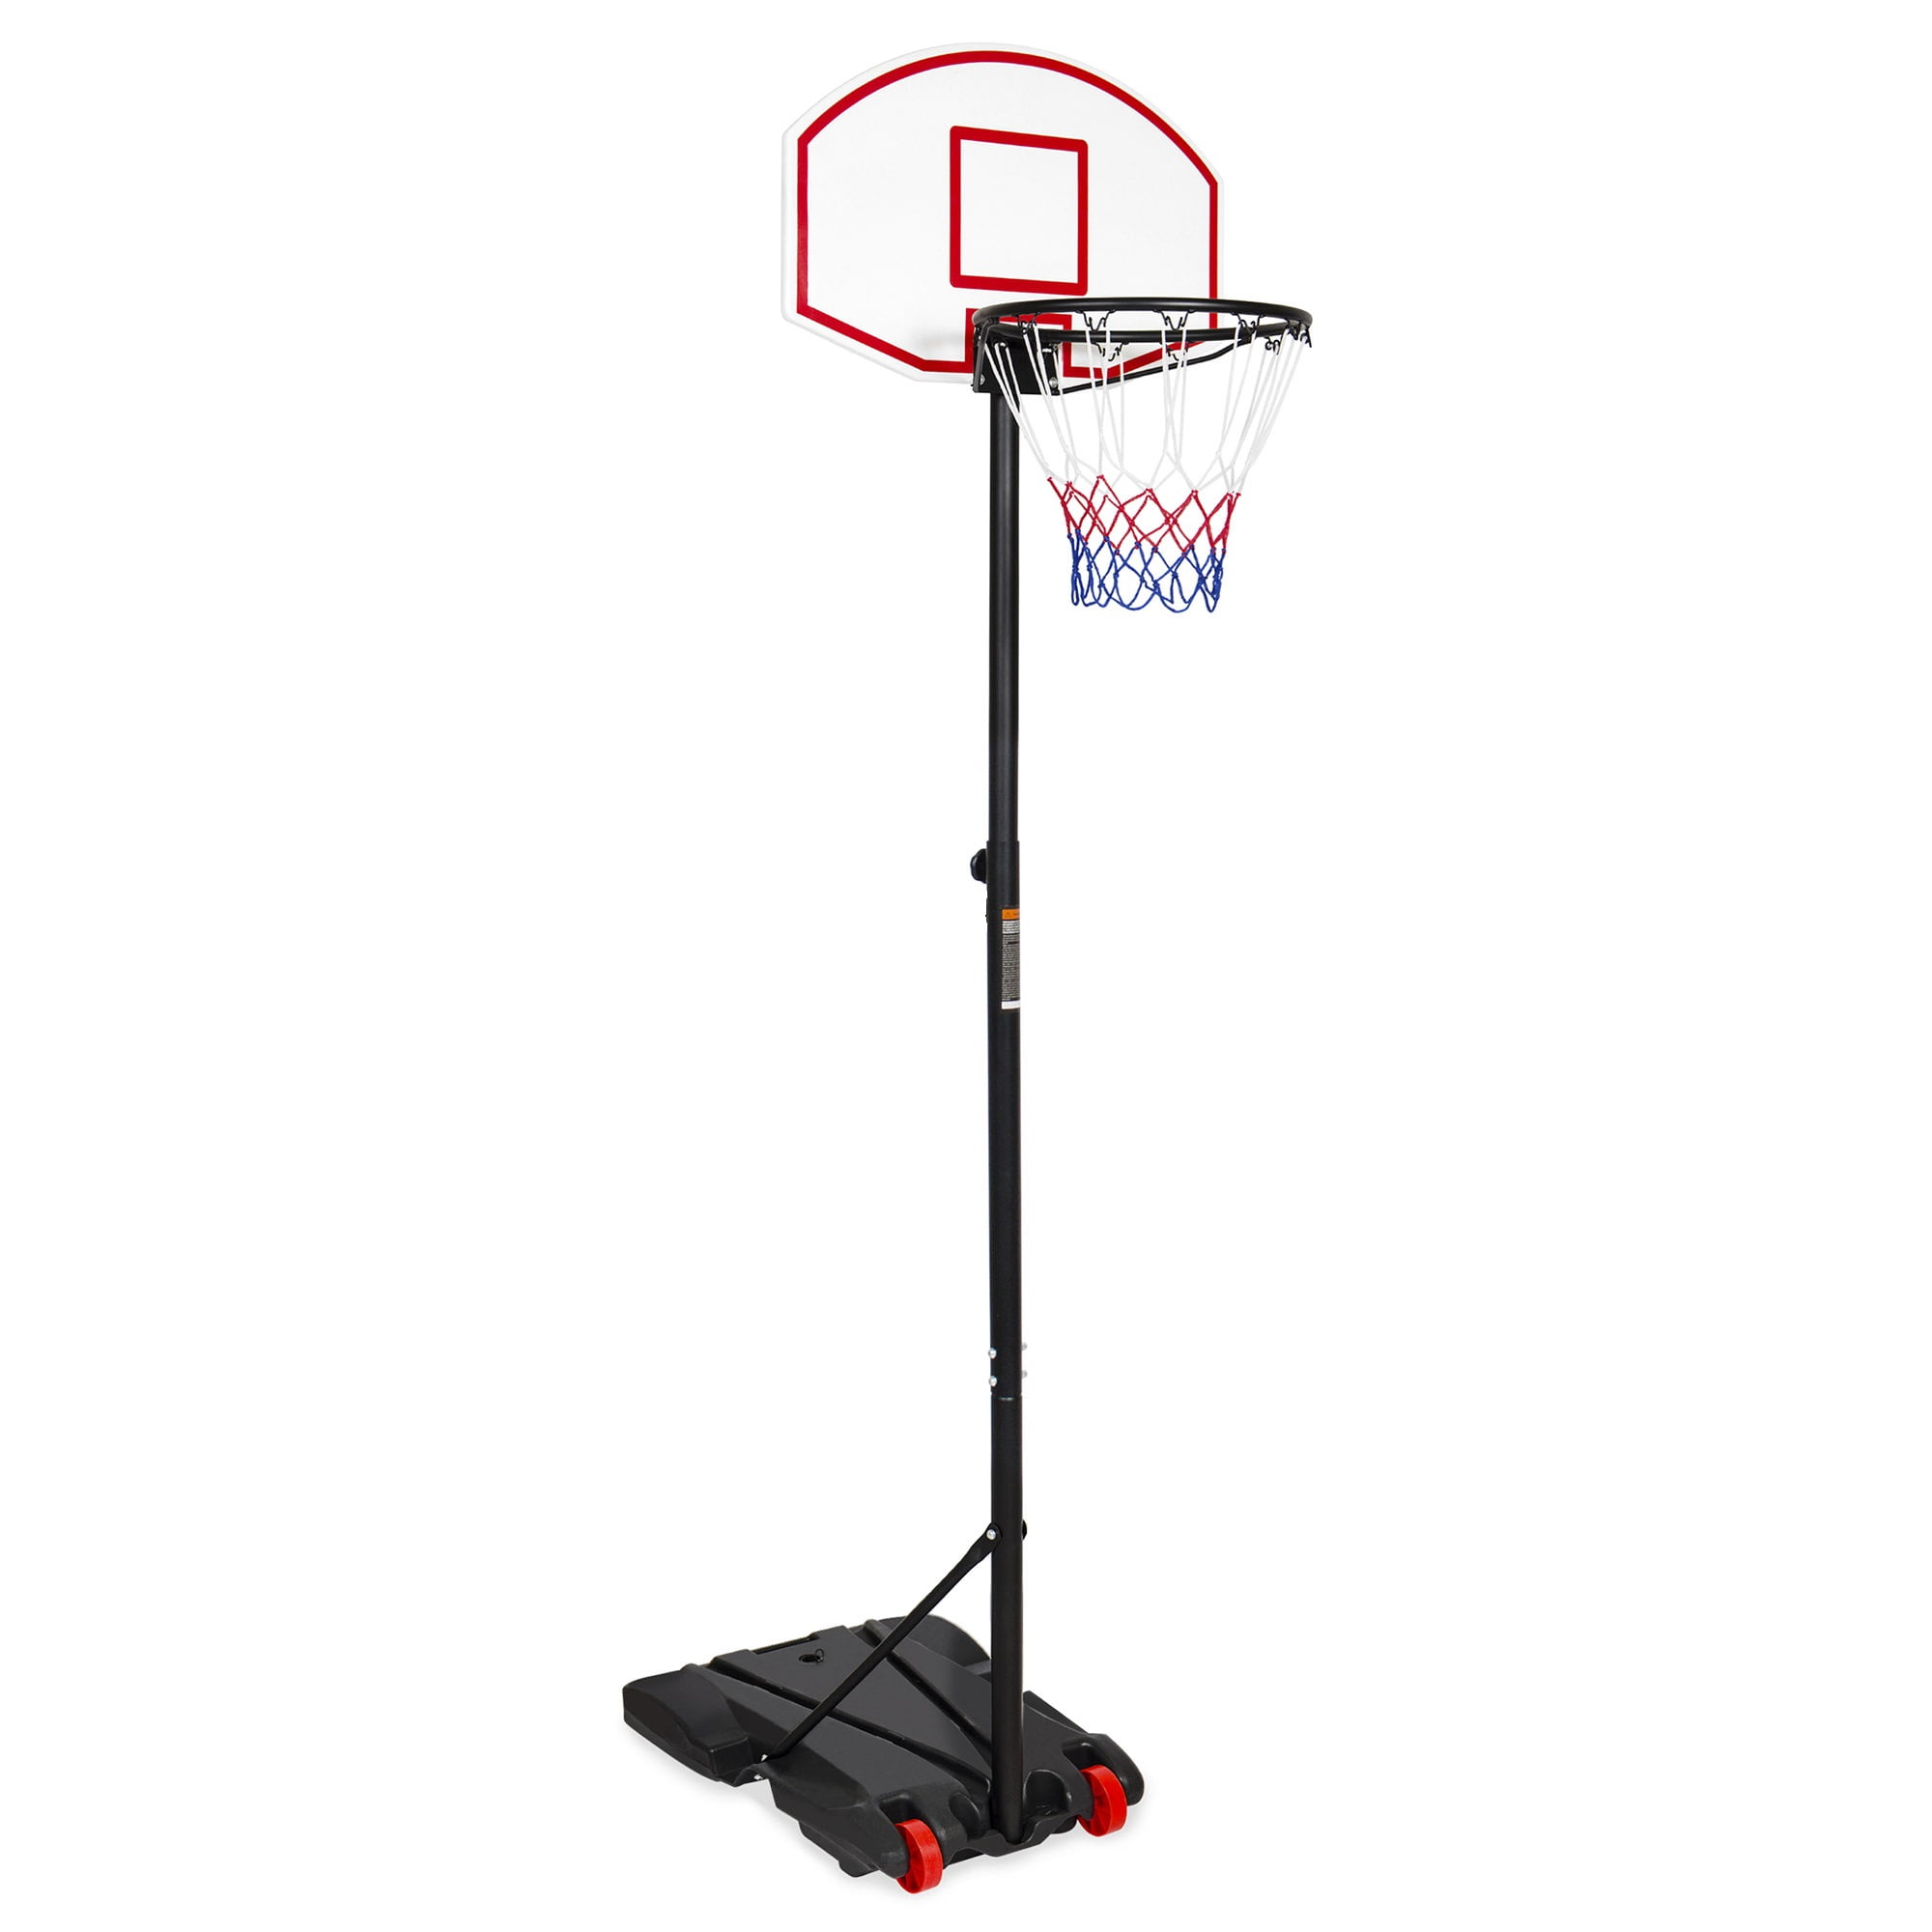 billig pålidelighed aflevere Inolait Portable Kids Junior Height-Adjustable(5.2 Ft-7 Ft) Basketball Hoop  Stand Backboard System with Wheels - Walmart.com